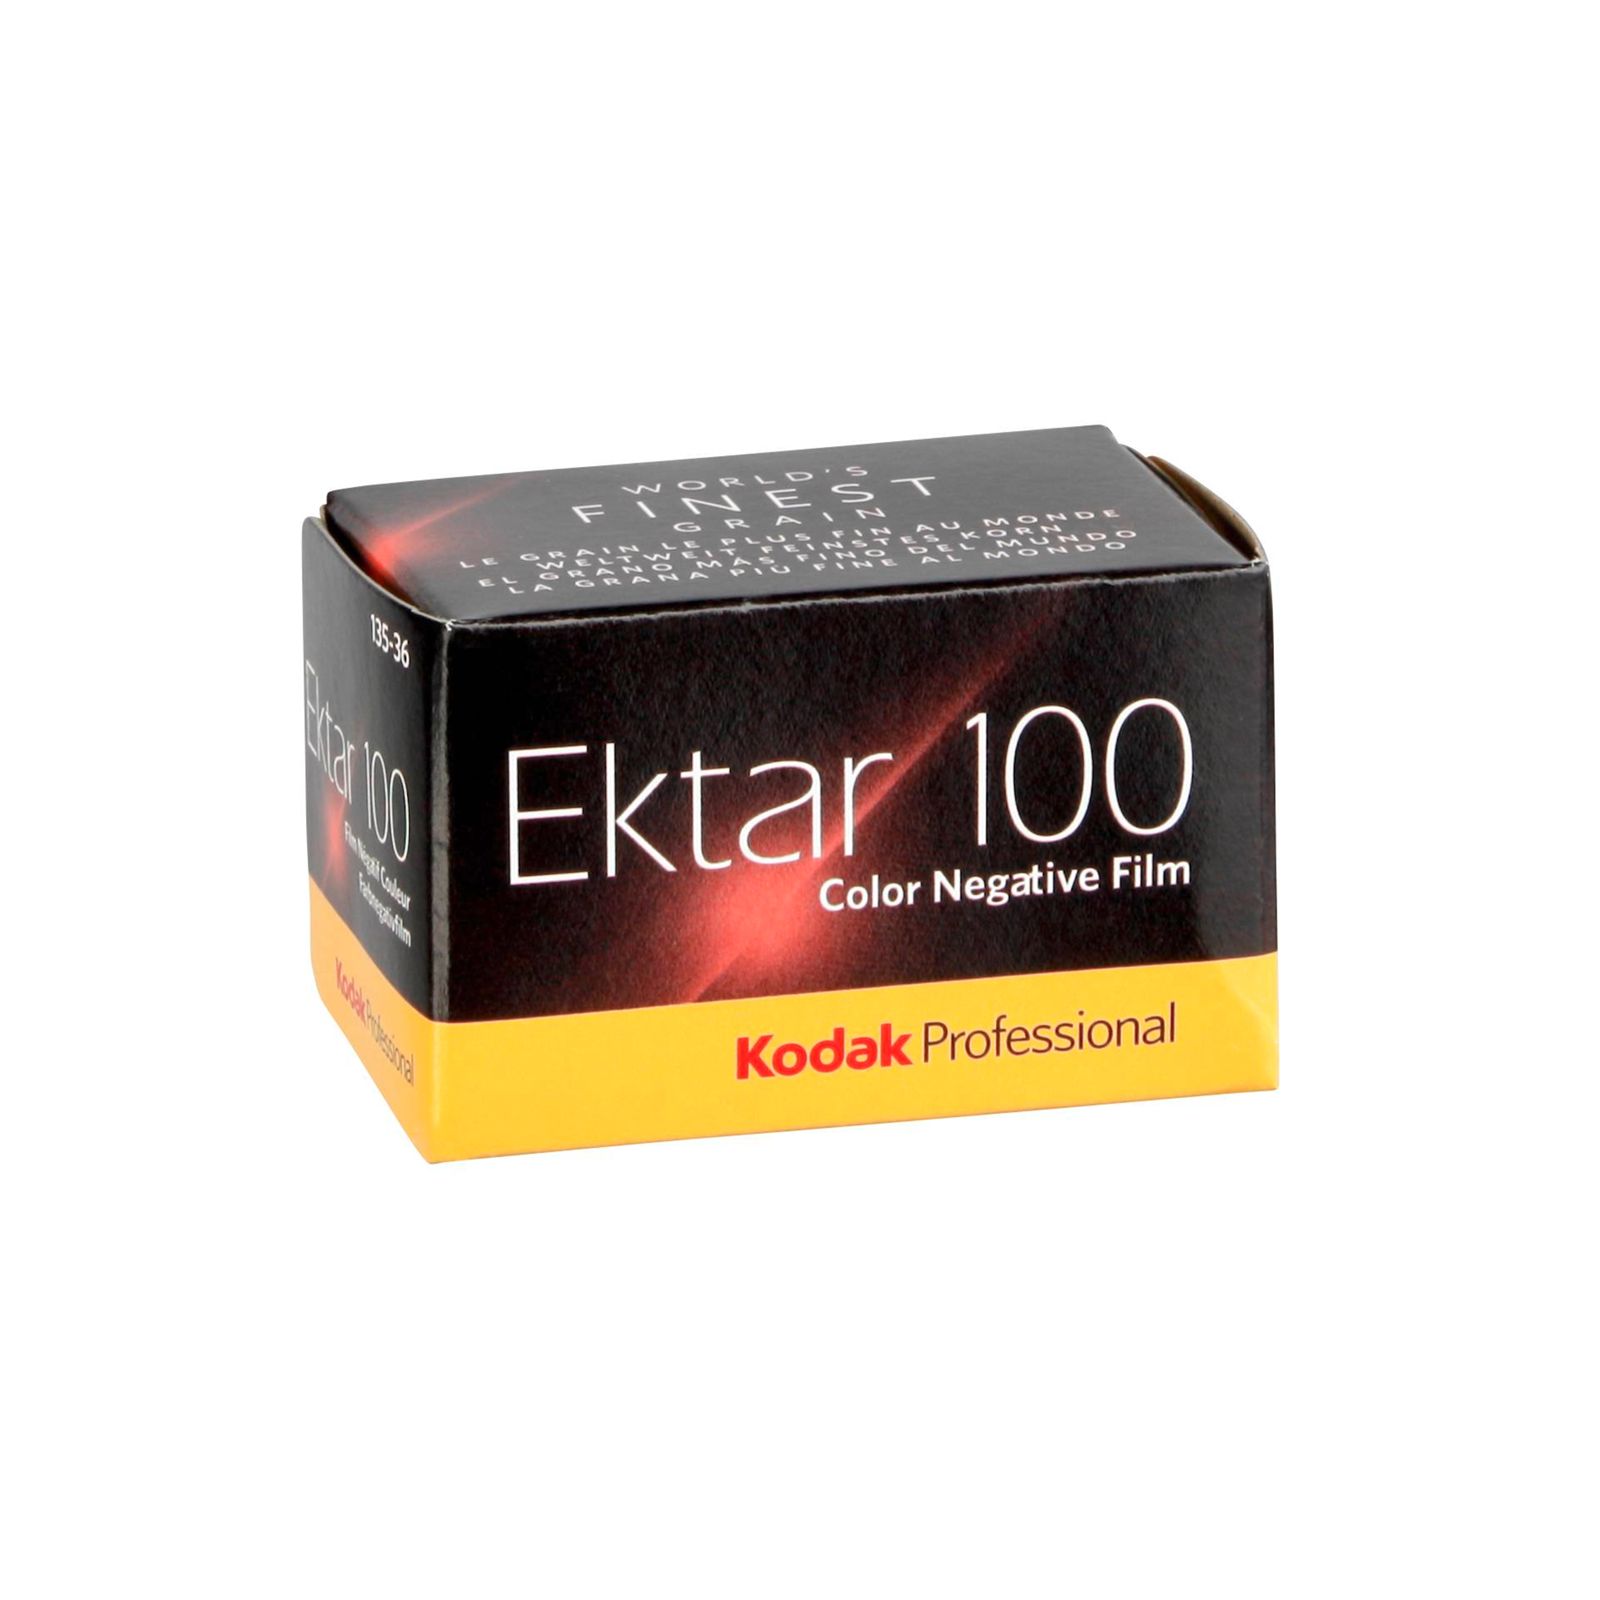 1 Kodak prof. Ektar 100 135/36